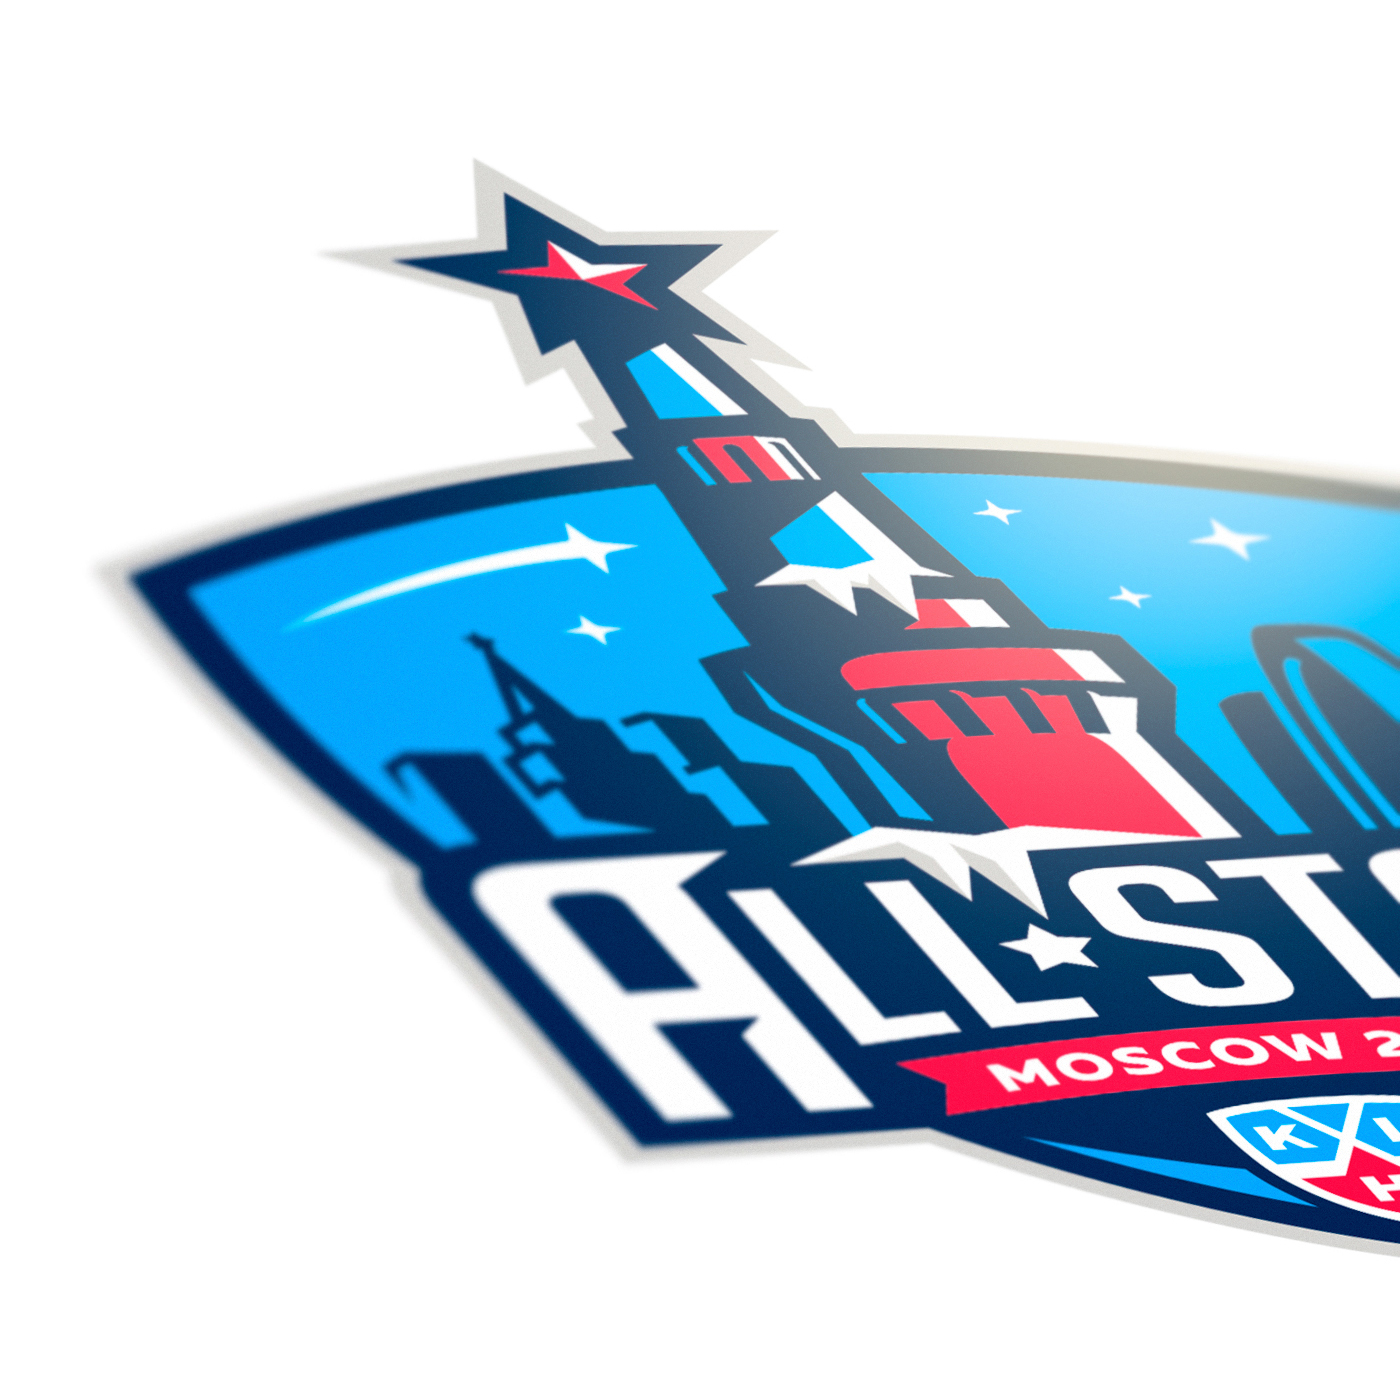 Moscow logo sports Allstar hockey Icehockey Logotype Sports logo sport logo Mascot